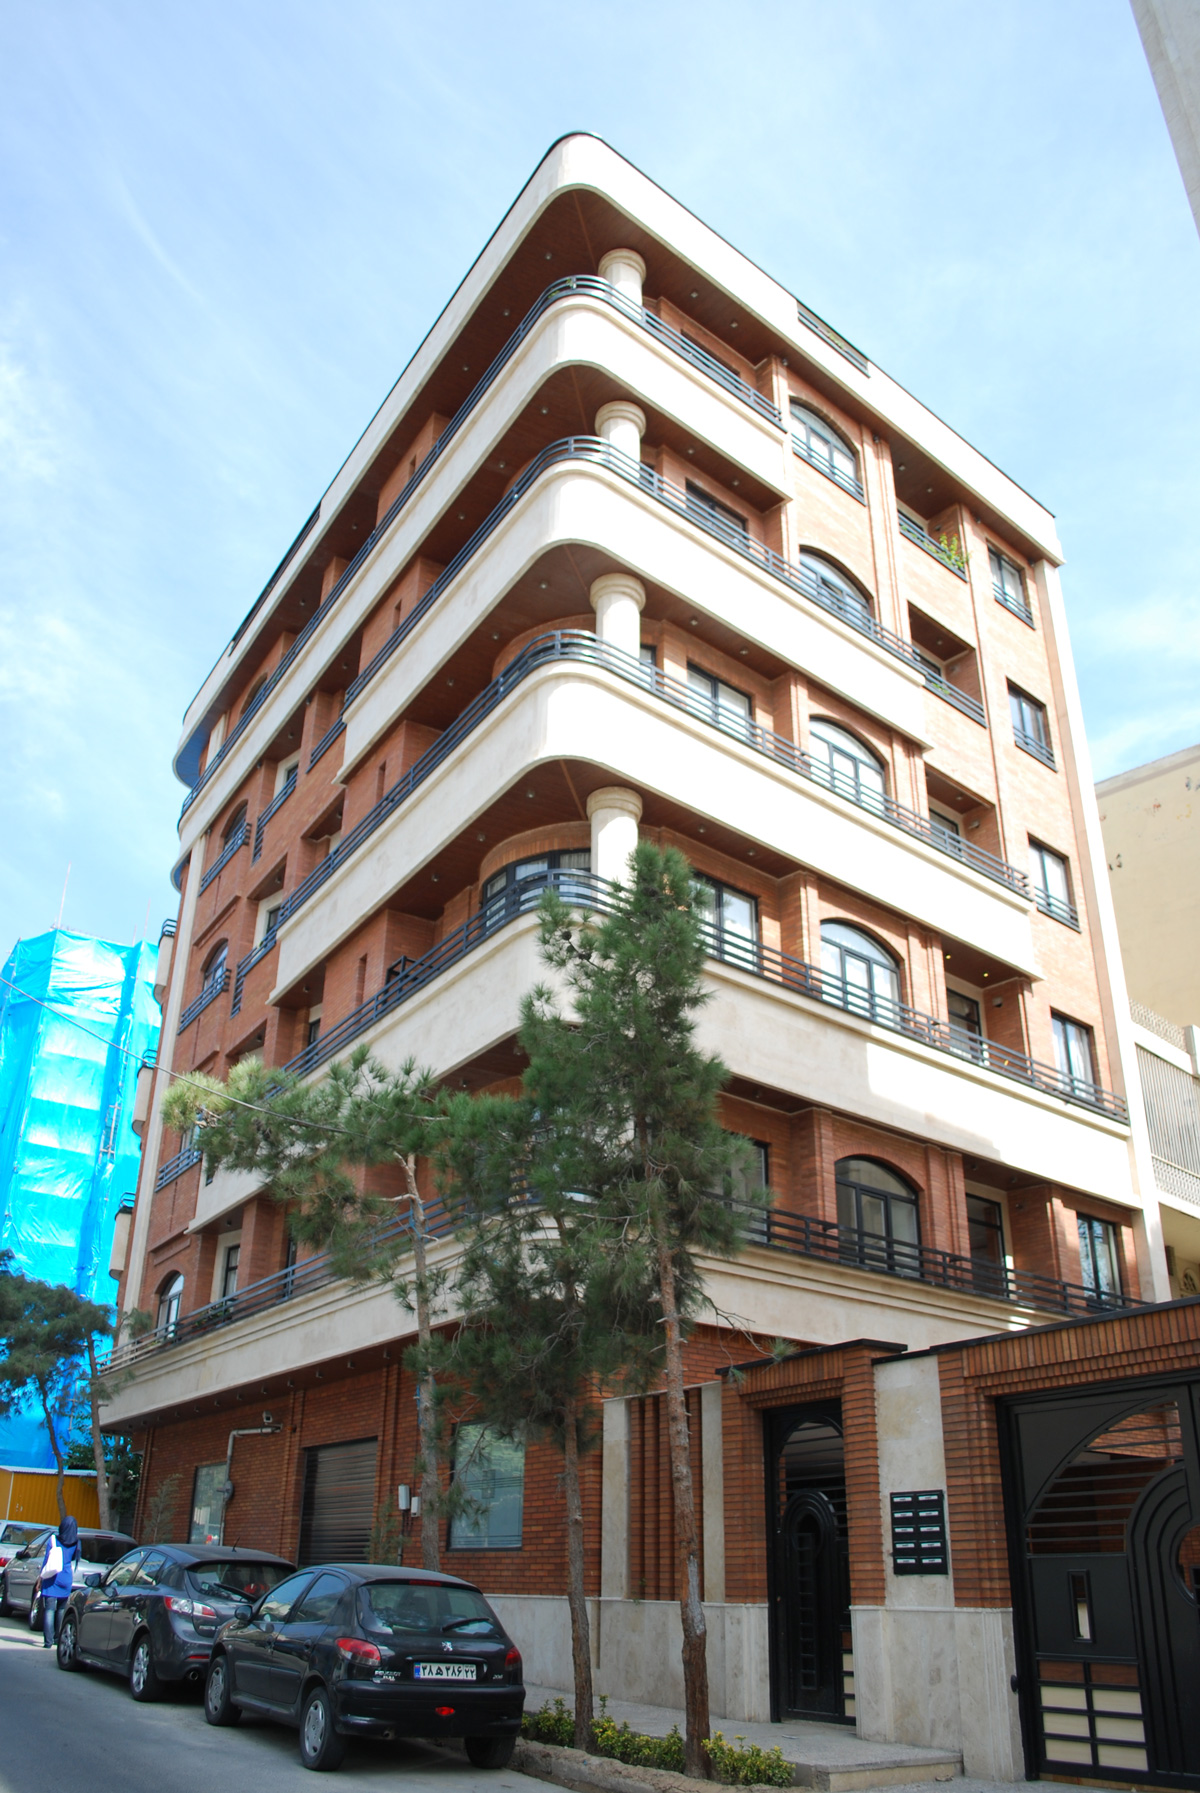 Parvaneh Residential Building